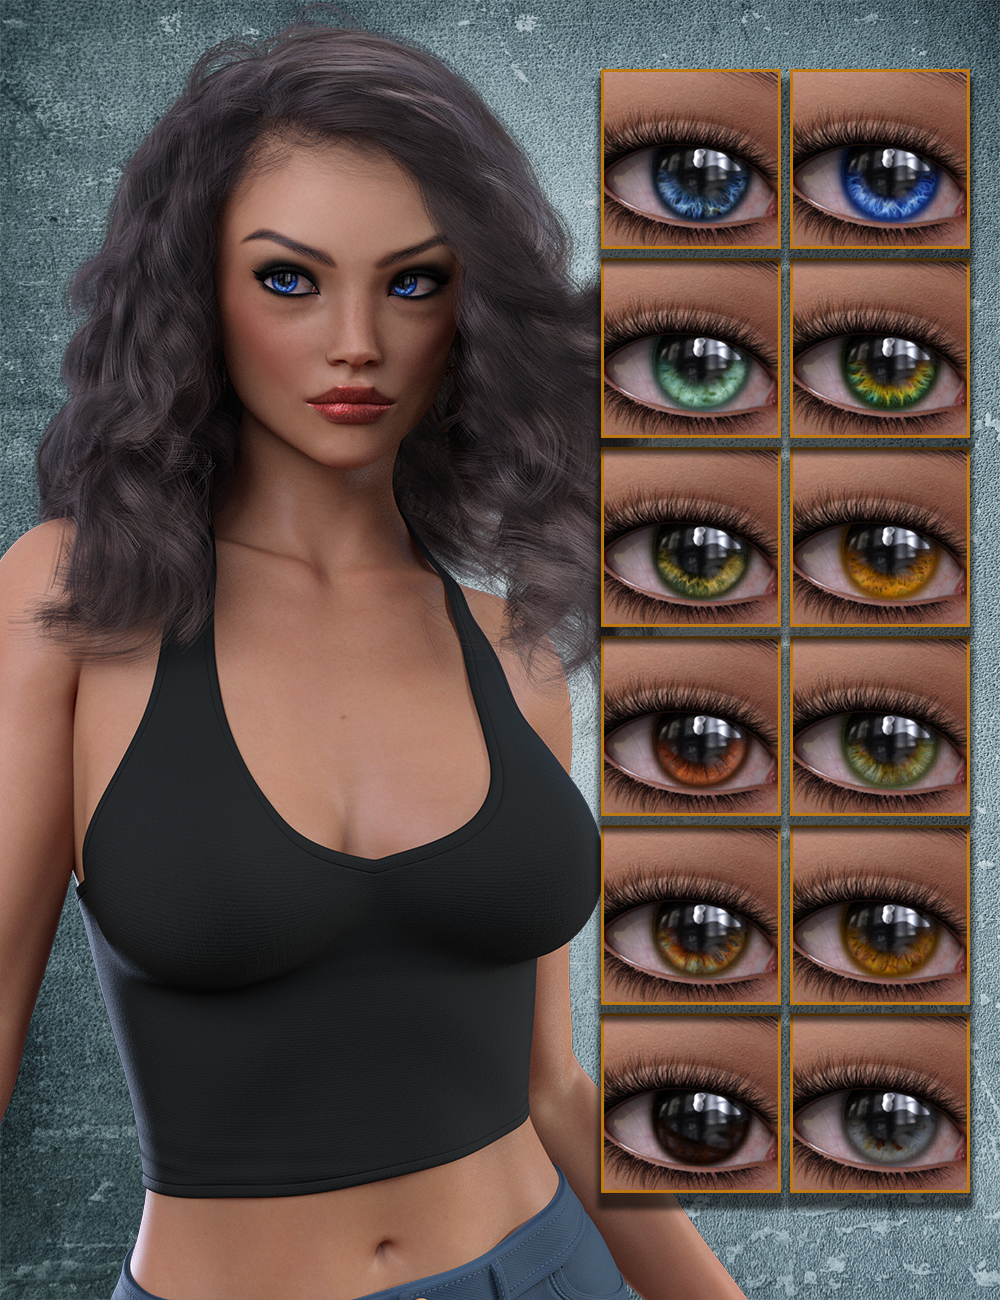 Bookbea for Genesis 8 Female by: hotlilme74, 3D Models by Daz 3D